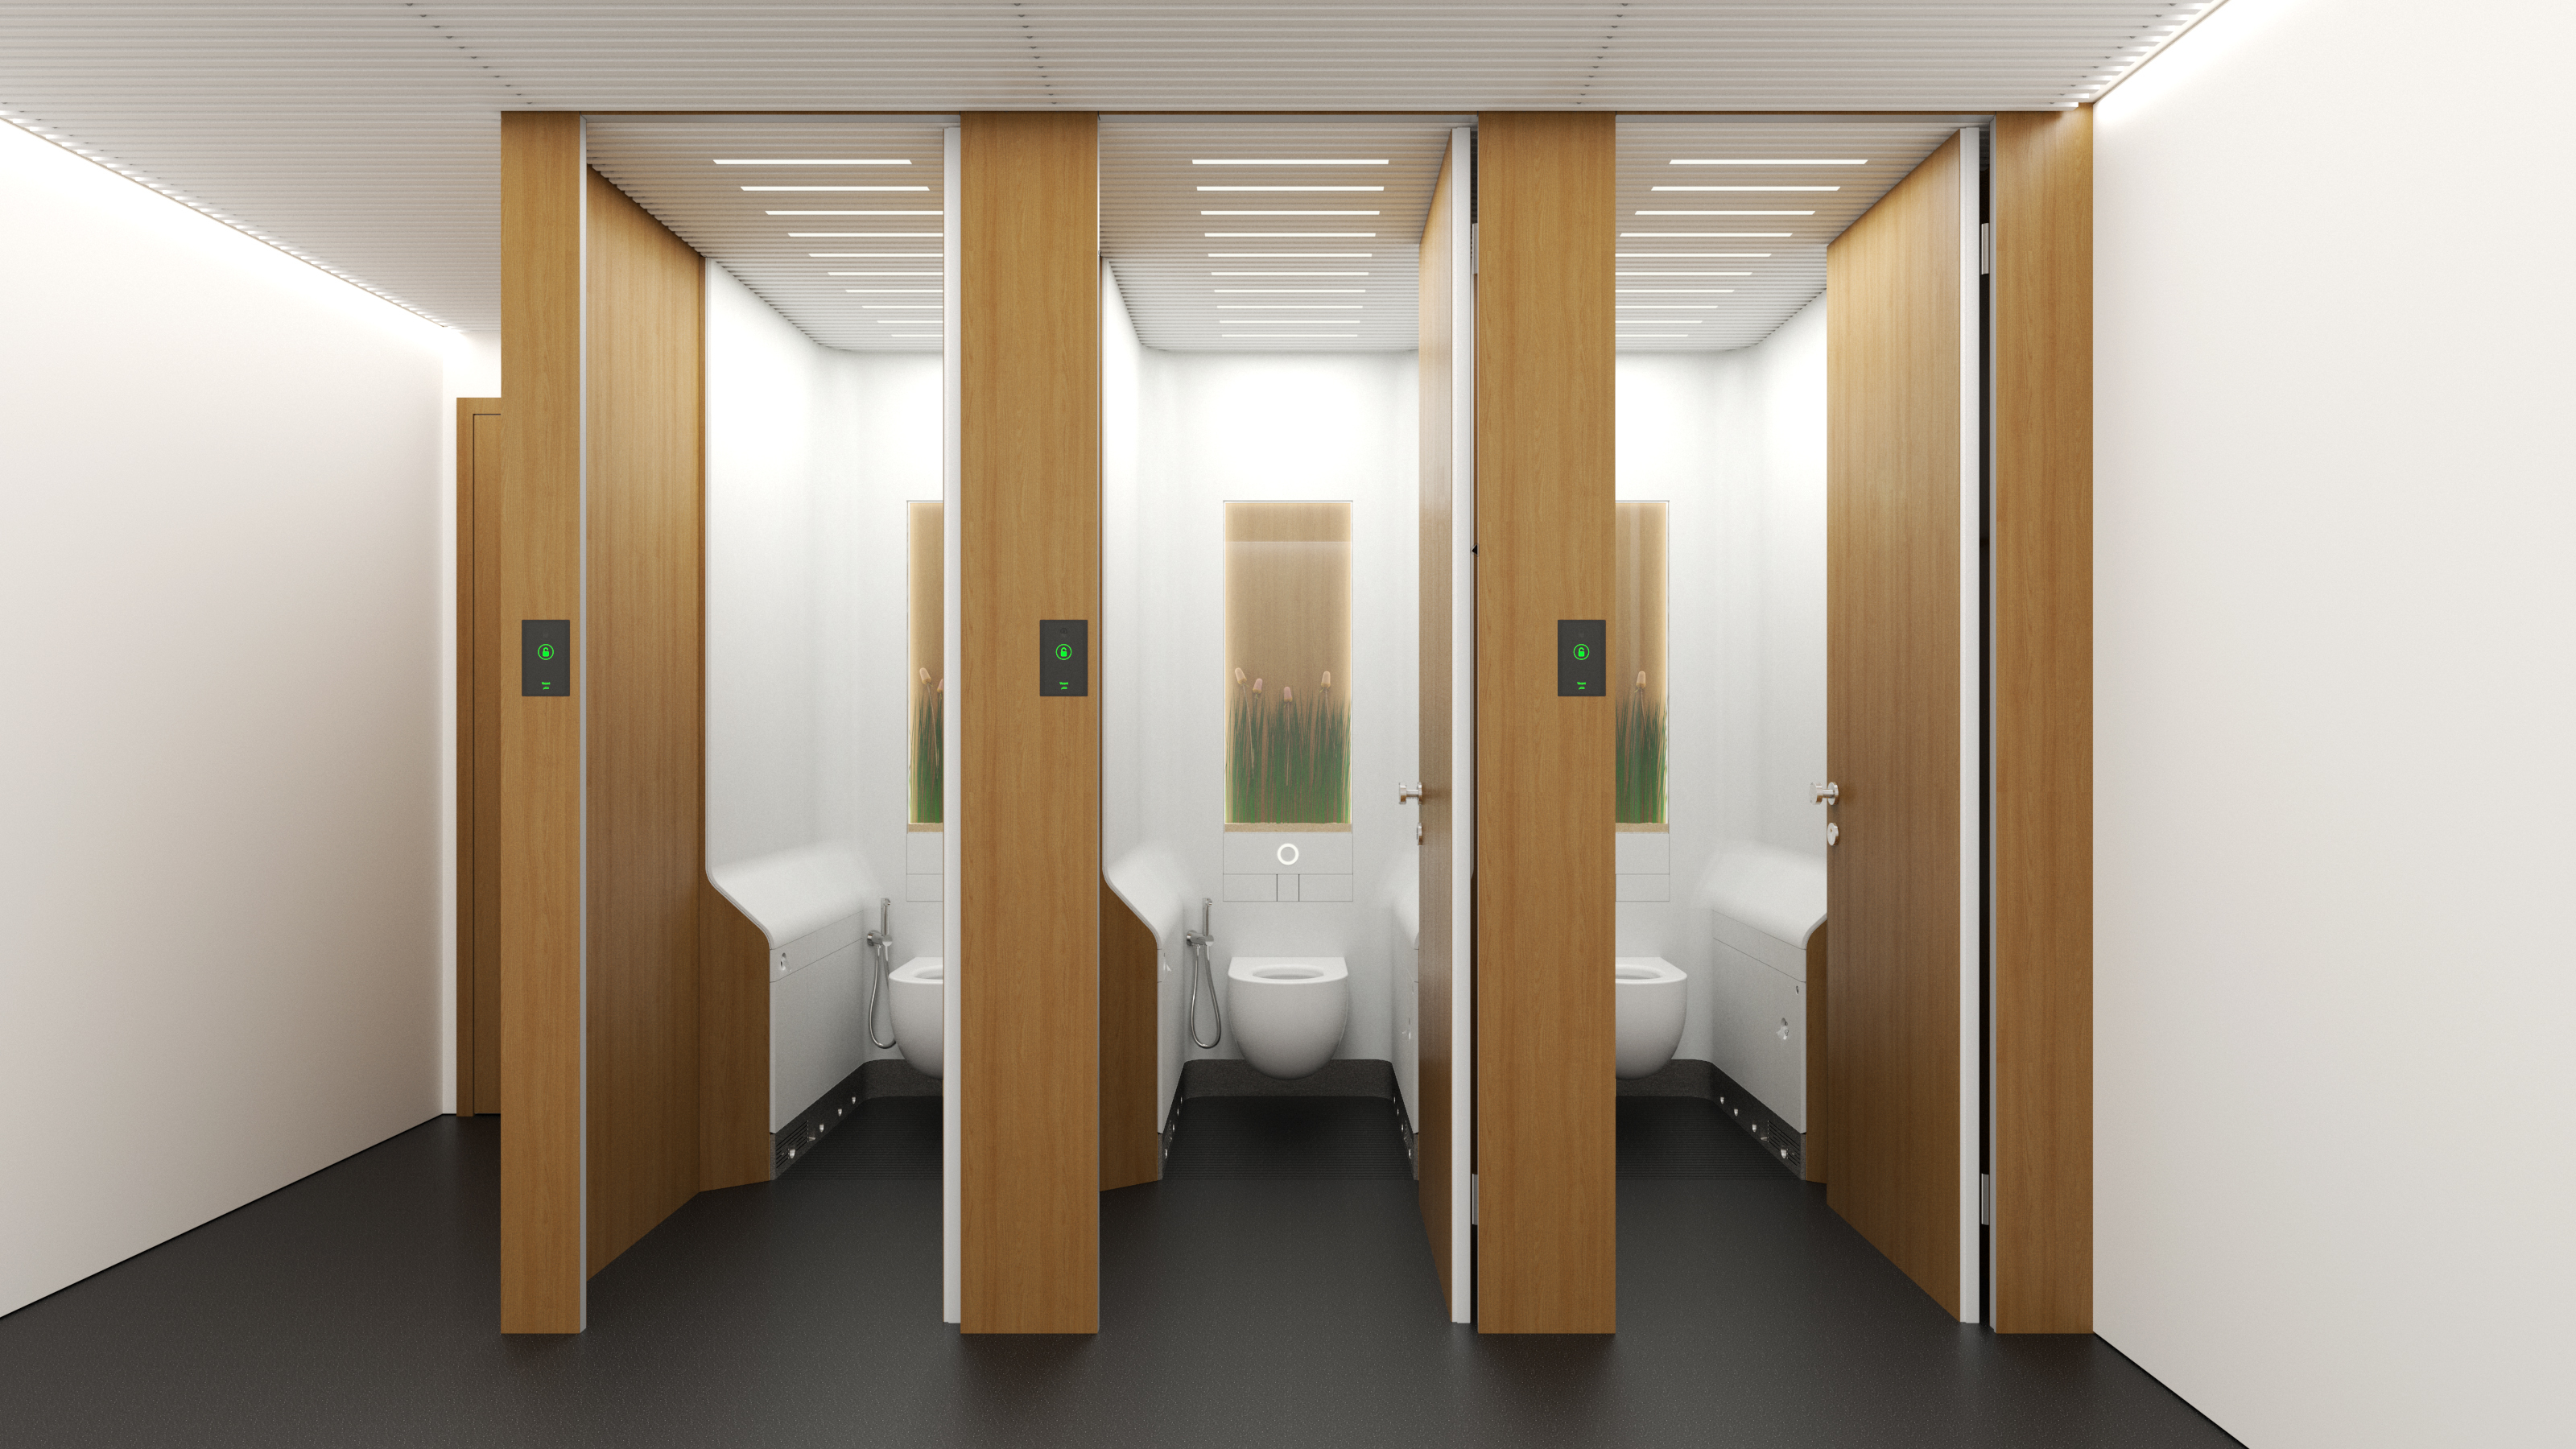 Туалет лаборатория бесплатная версия. HPL панели для санузла. HPL панели для ванной комнаты. Дизайн школьного туалета. Туалеты в школе дизайн.